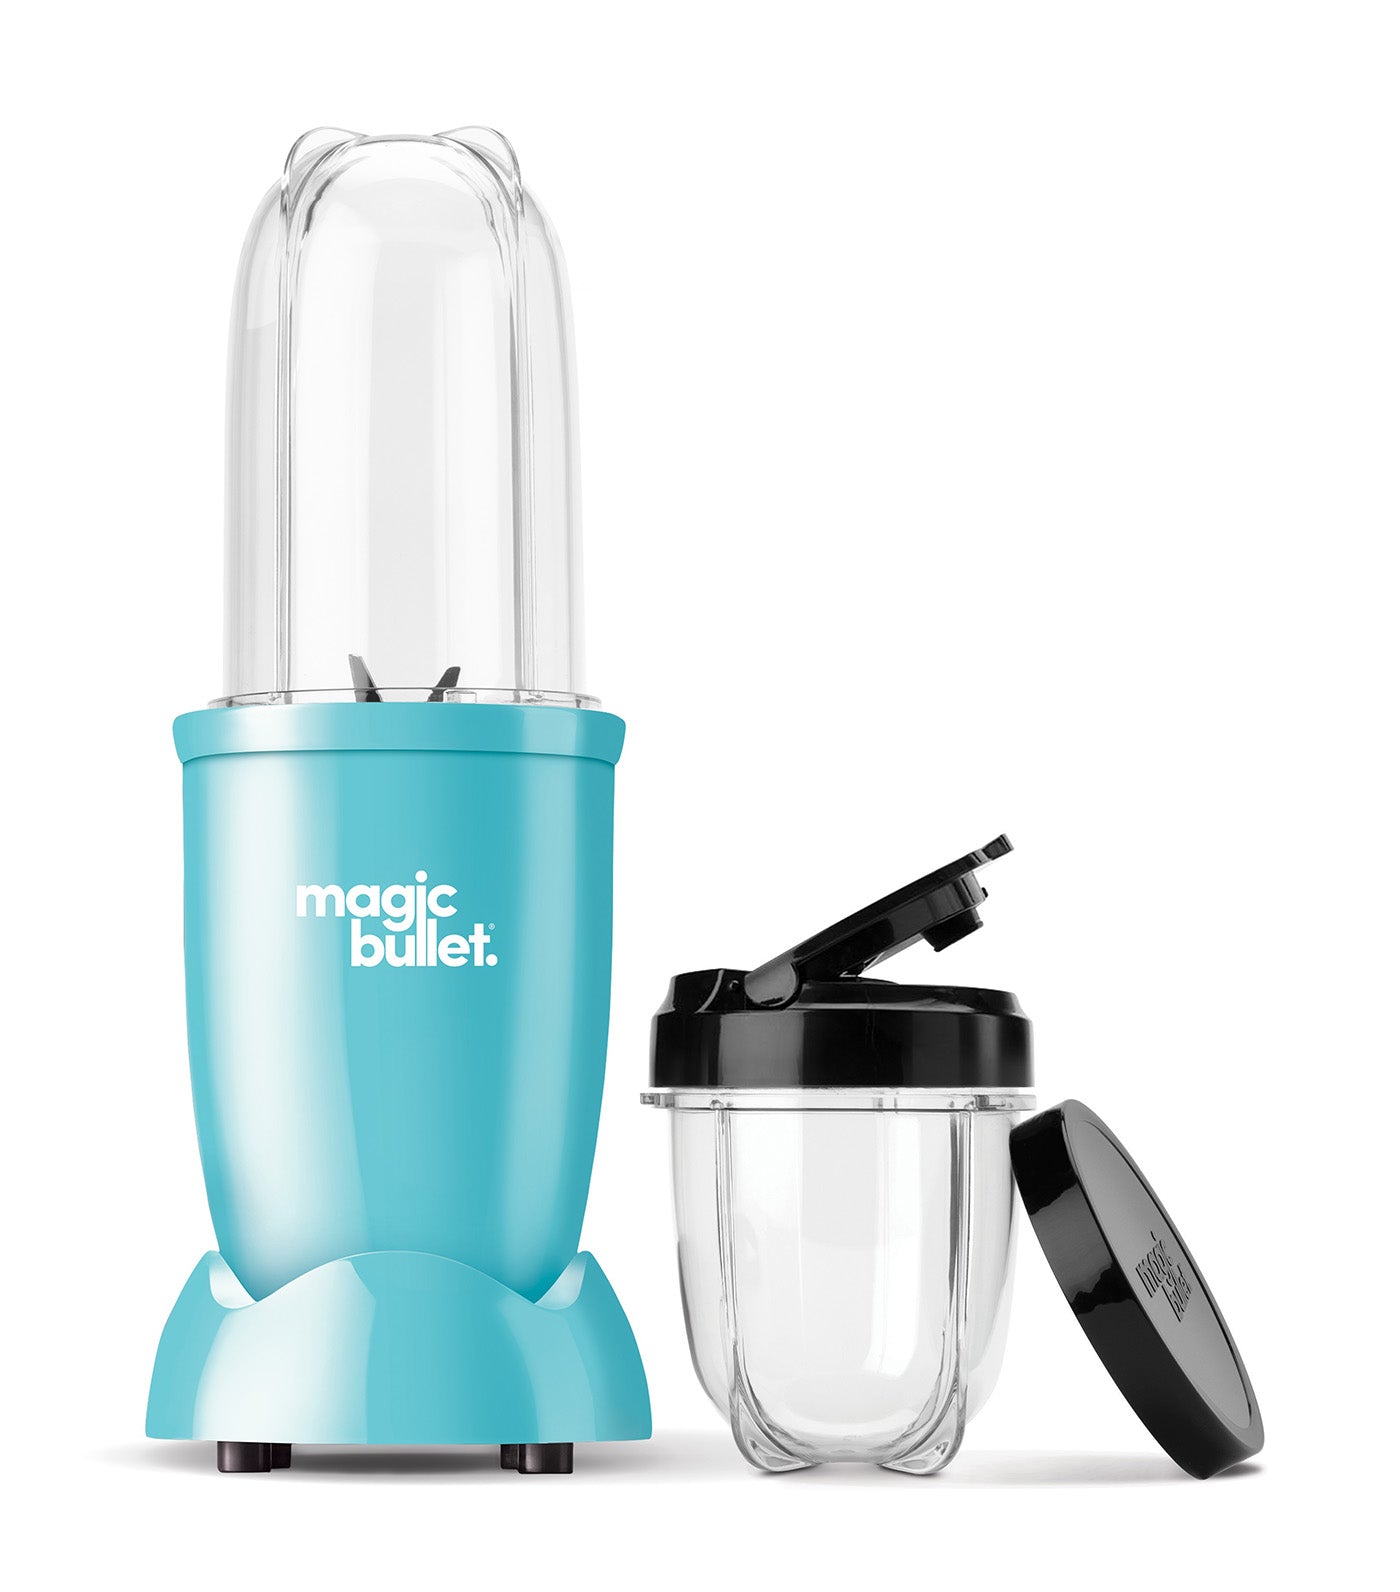 Nutribullet Magic Bullet® Blender - Gloss Aqua